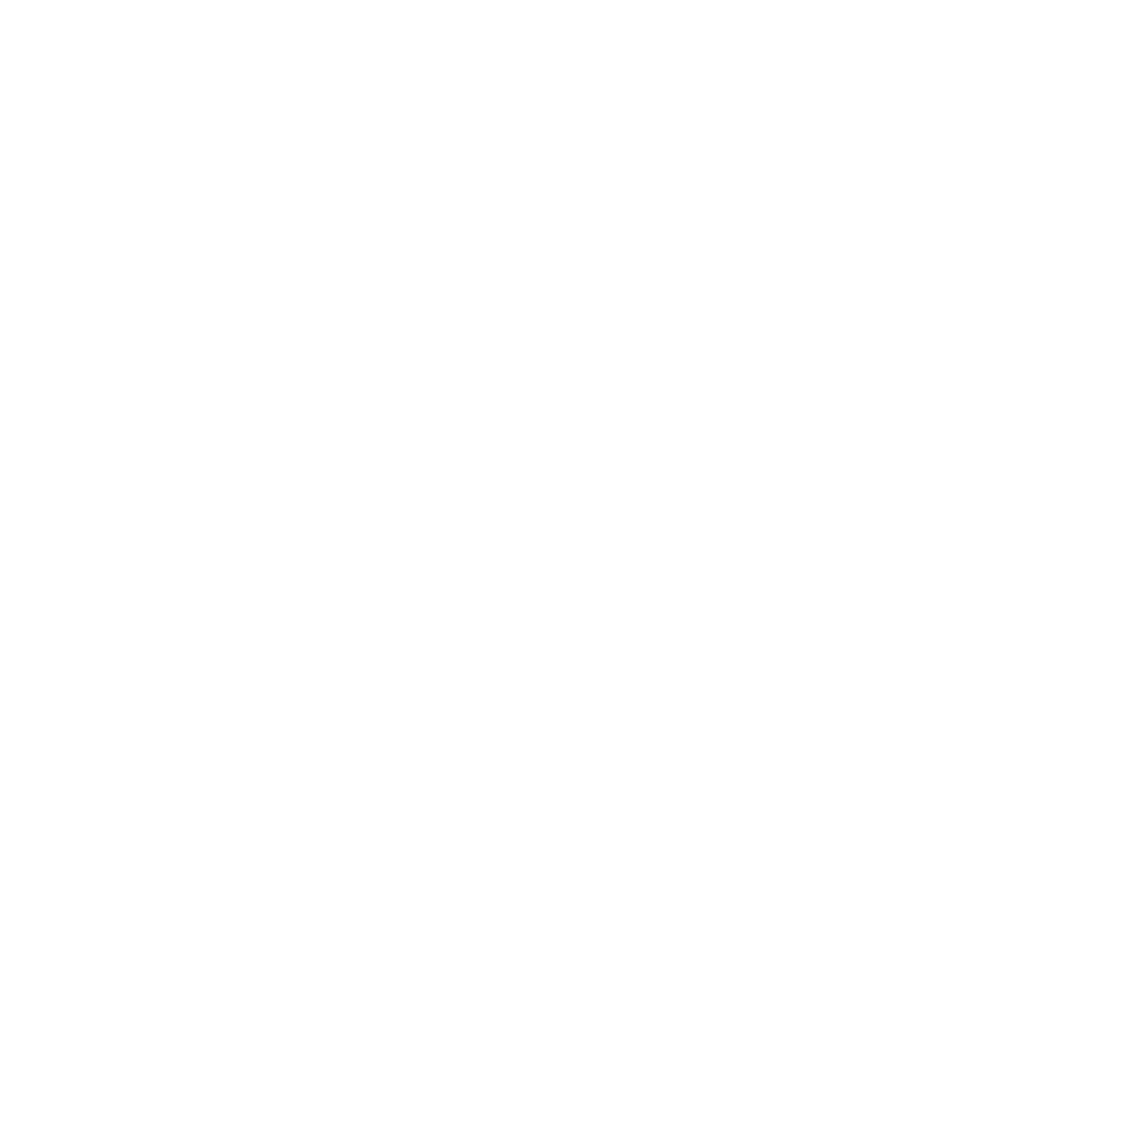 Union Arena Logo